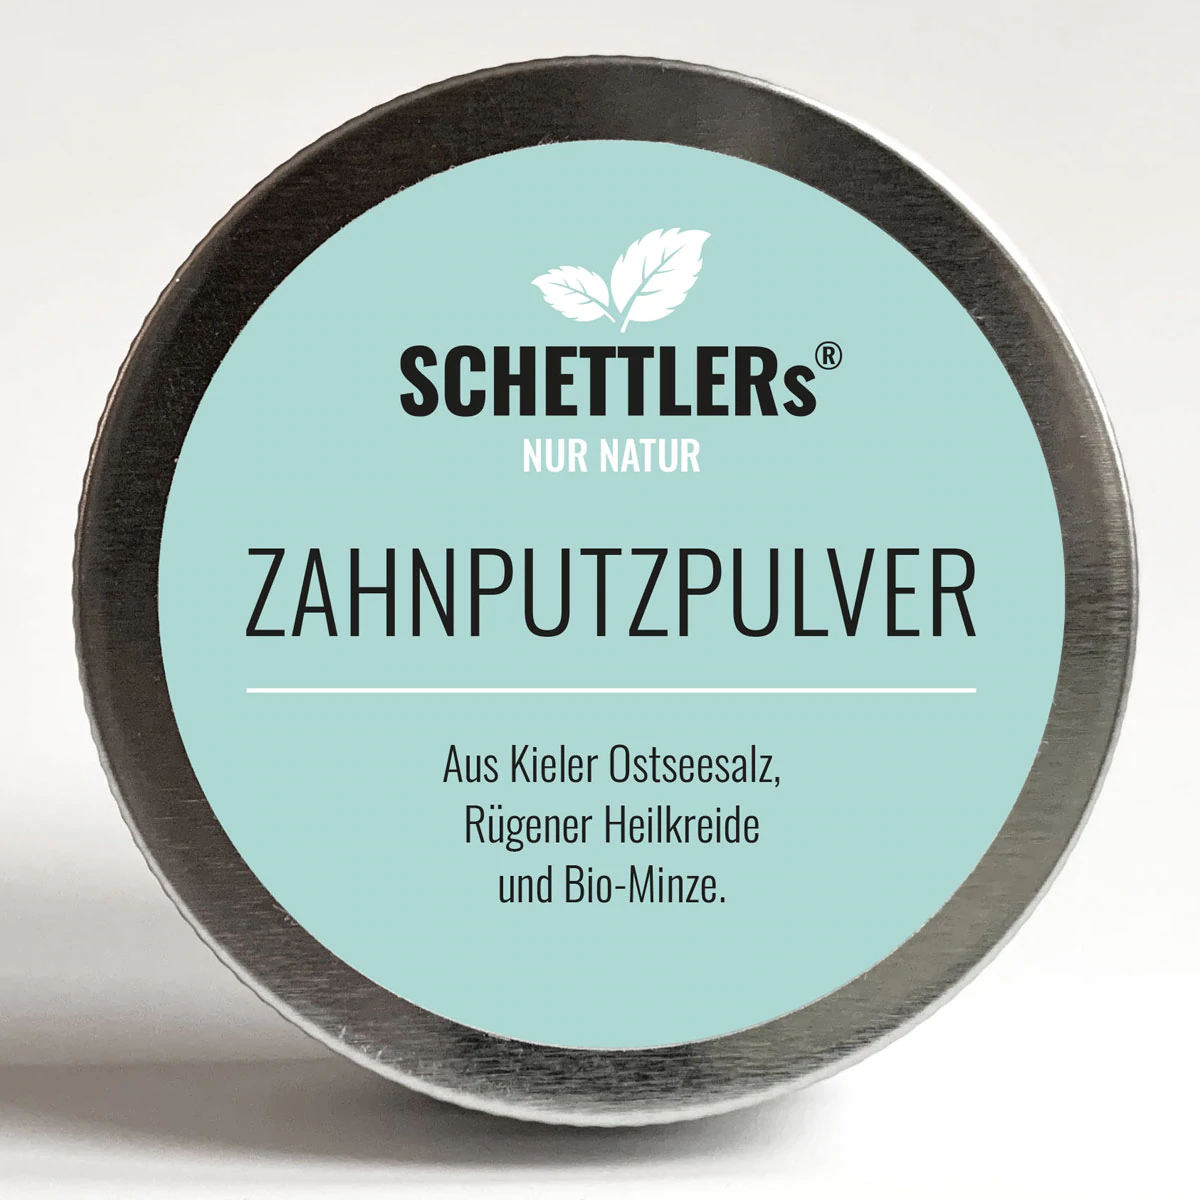 SCHETTLERs Zahnputzpulver - Das Original | 30 g